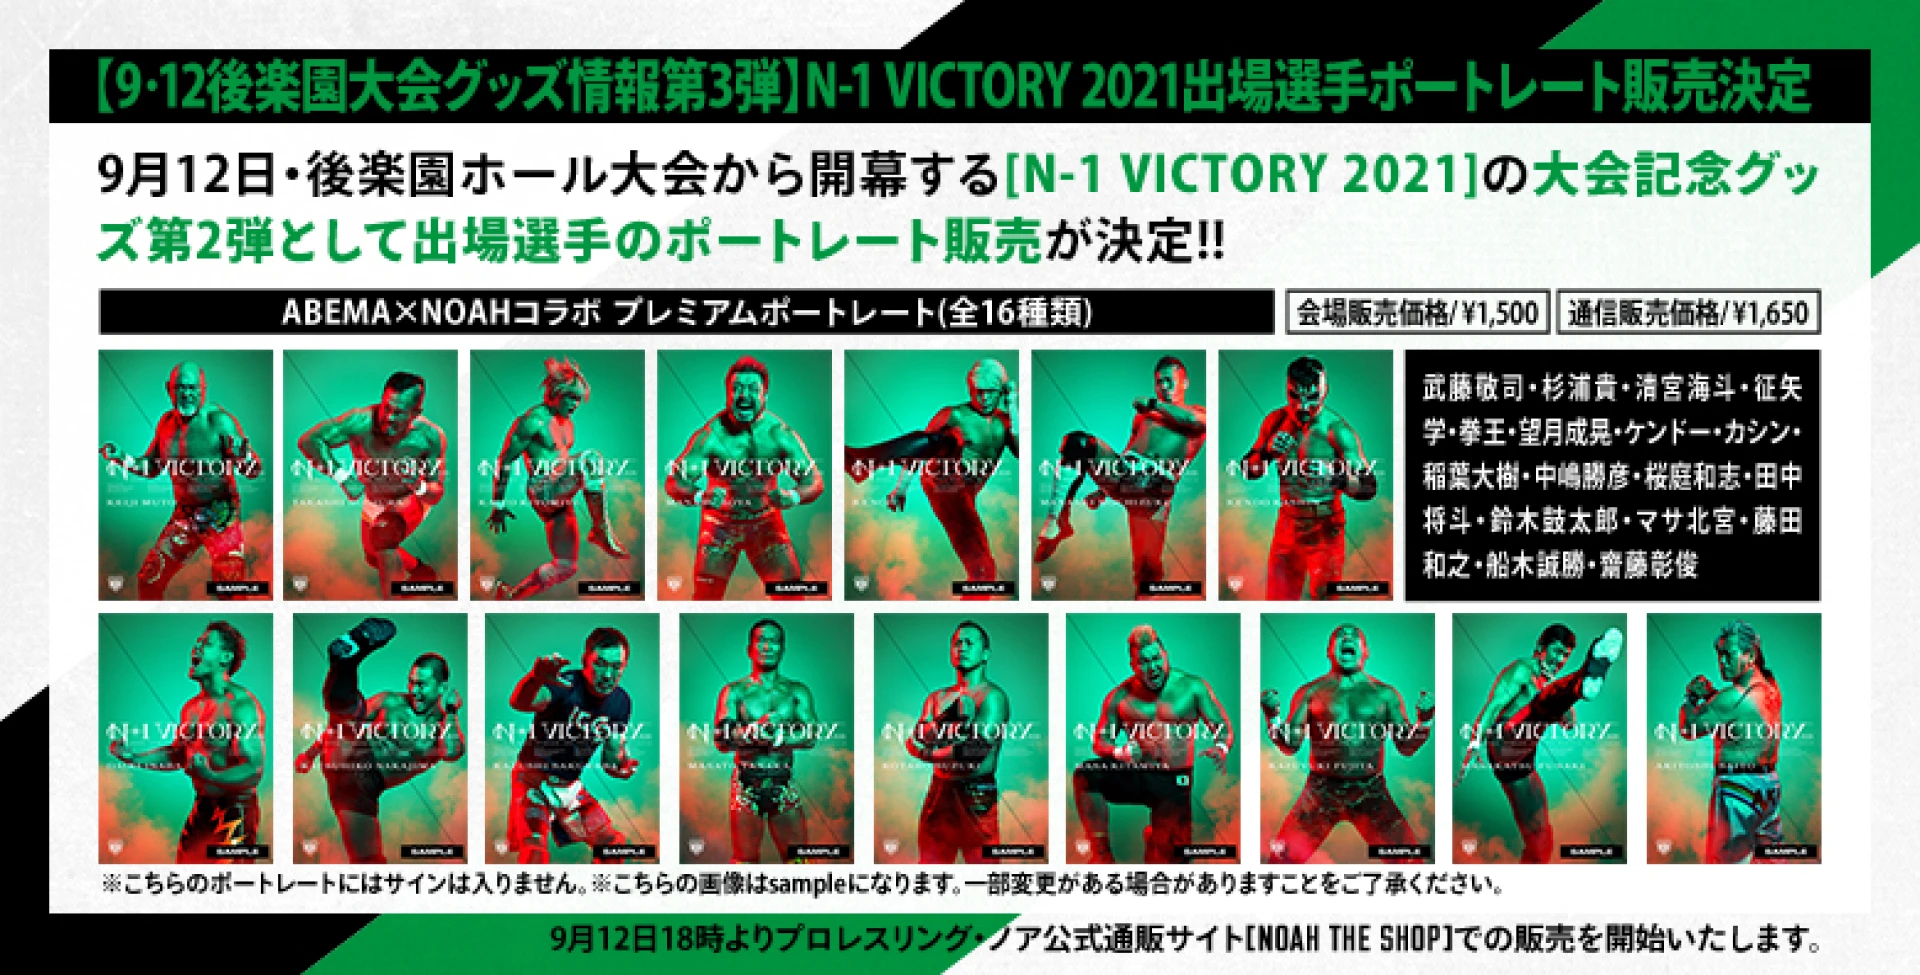 【9･12後楽園大会グッズ情報第3弾】N-1 VICTORY 2021出場選手ポートレート販売決定